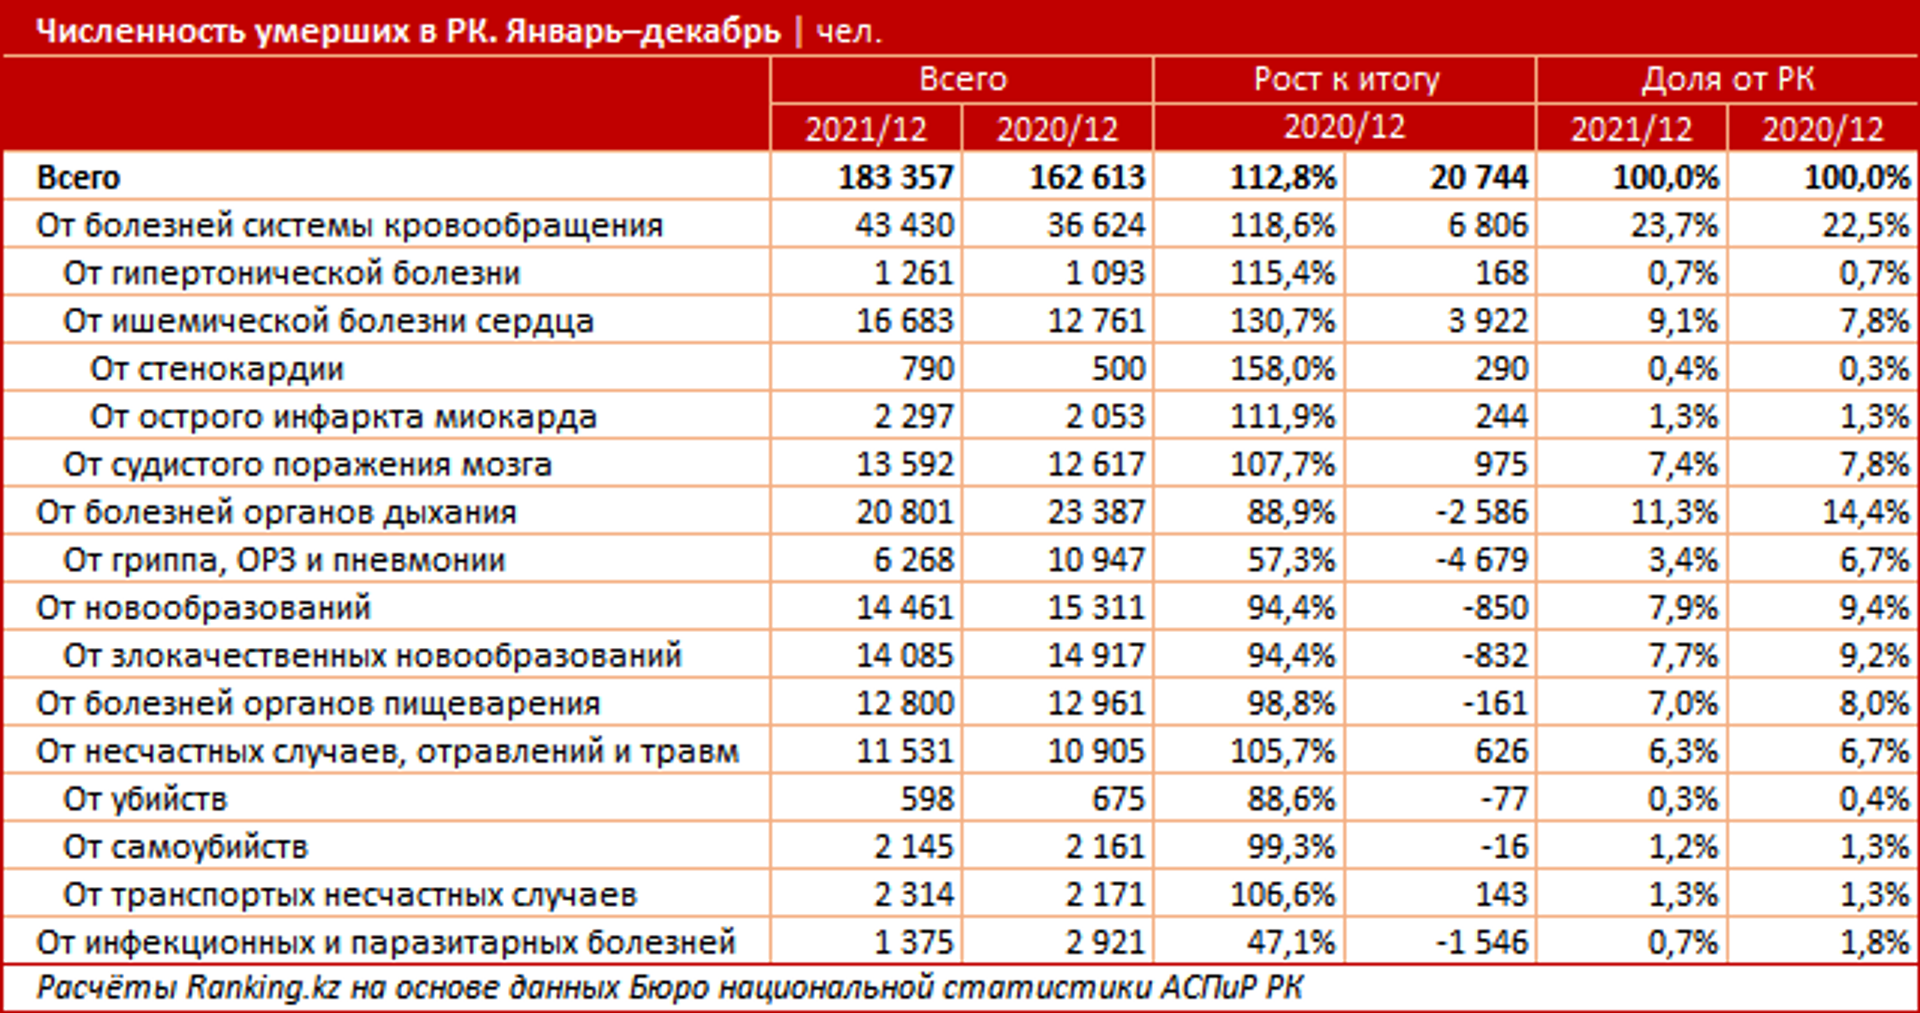 Причины смертности казахстанцев за 2020-2021 годы - Sputnik Казахстан, 1920, 21.02.2022